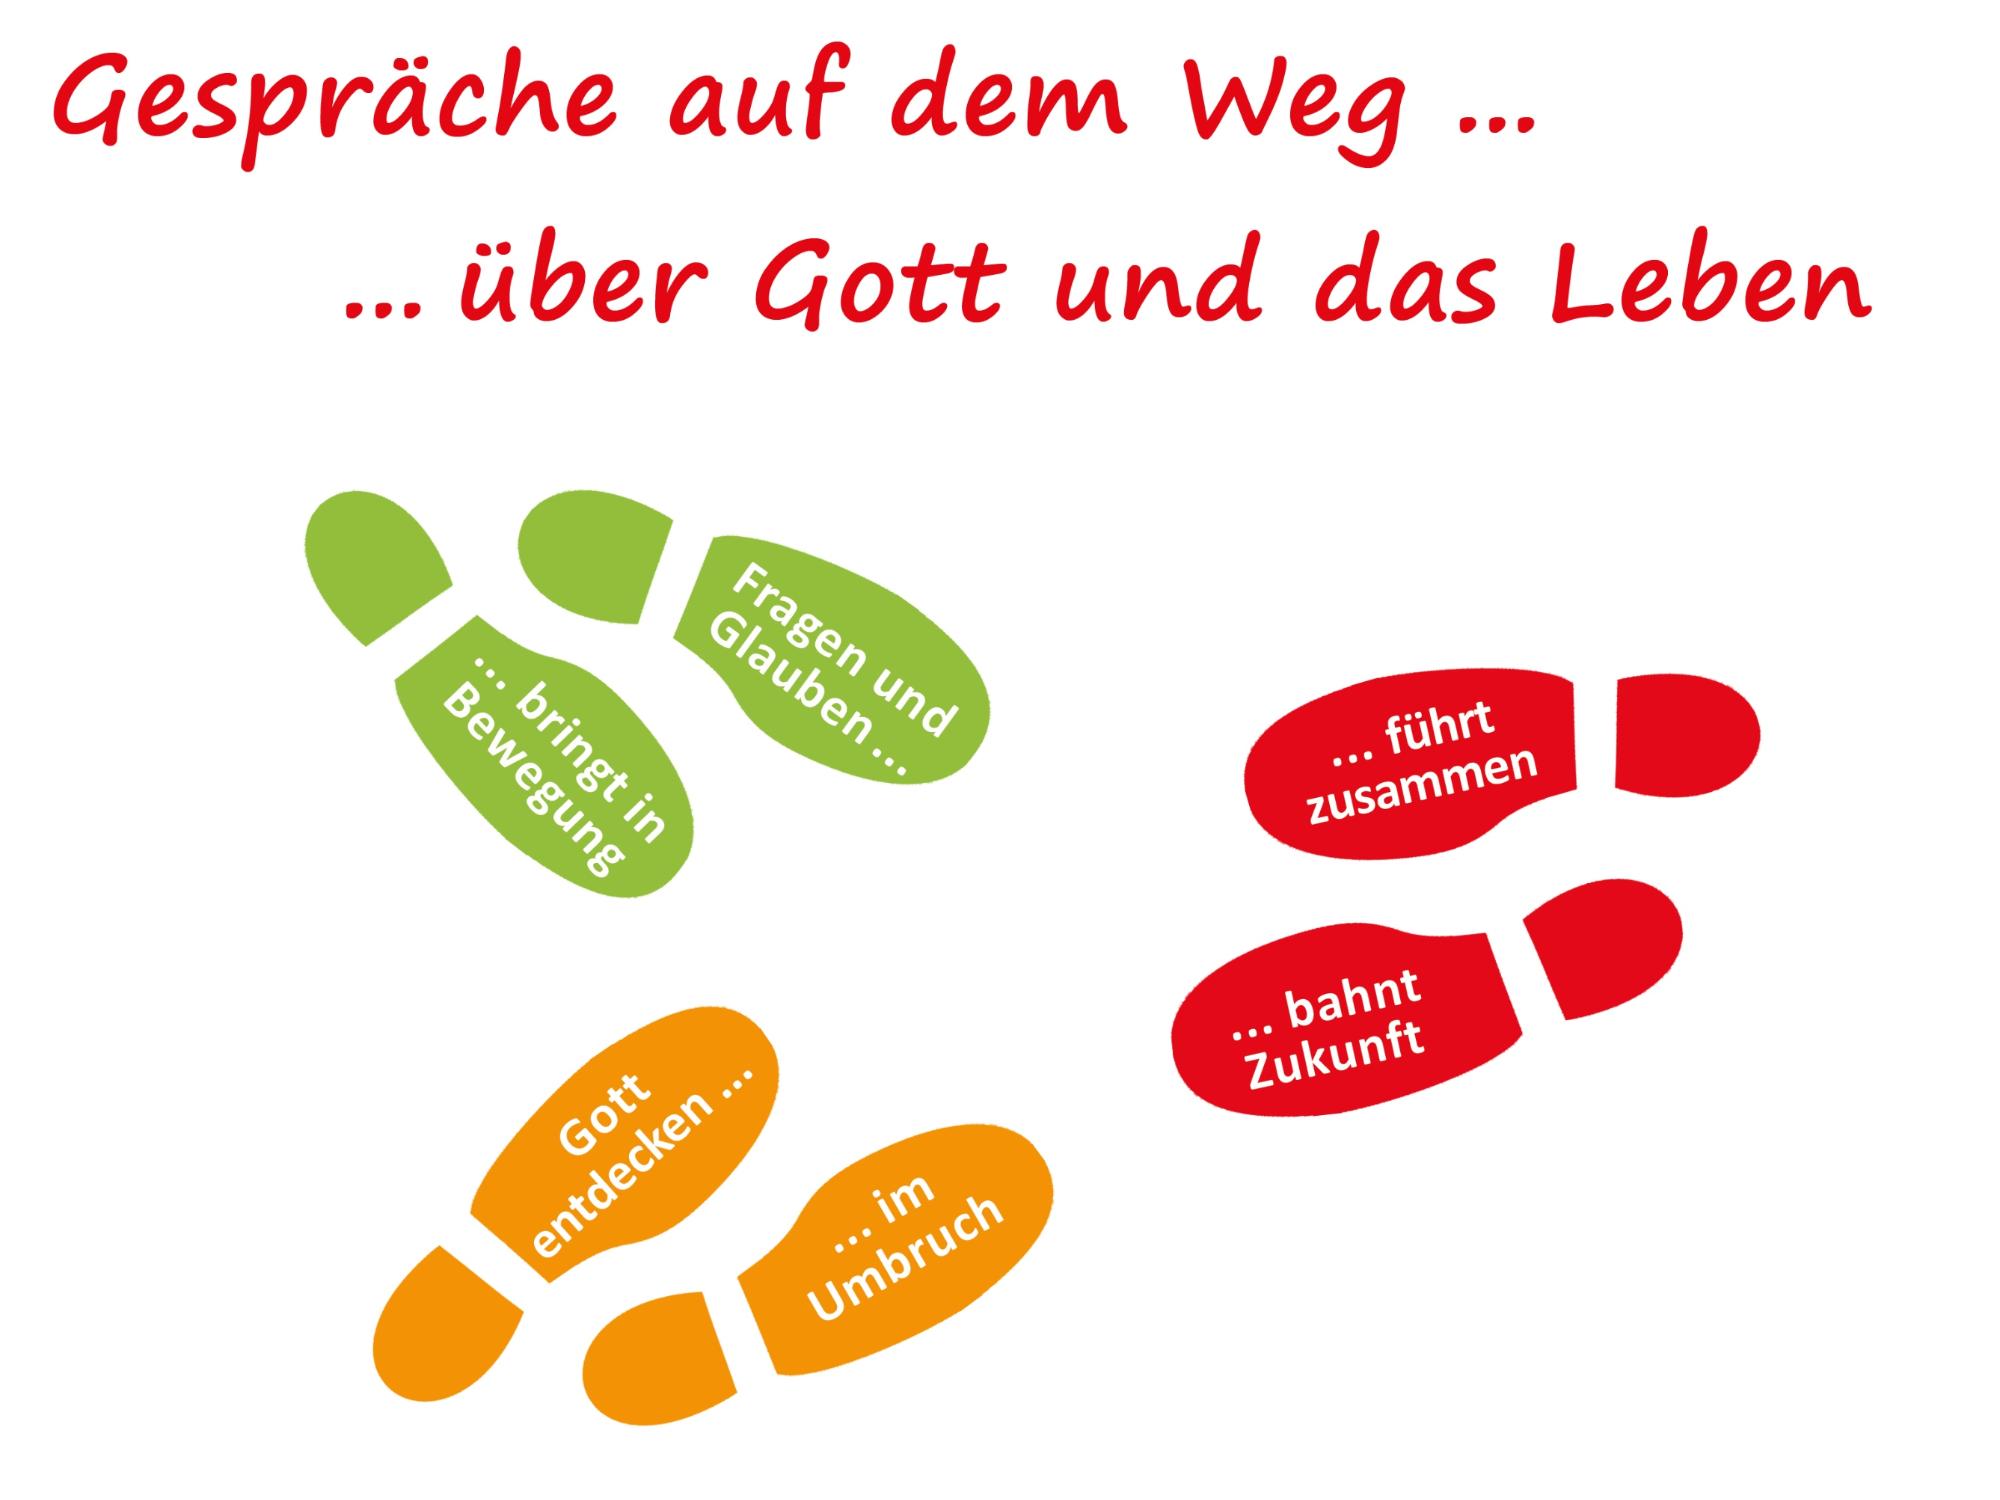 GLAUBENSTAG - DER EMMAUS WEG (c) Fußspuren mit Schrift aus Flyer UnE-2 / copyright WeG-Initiative.